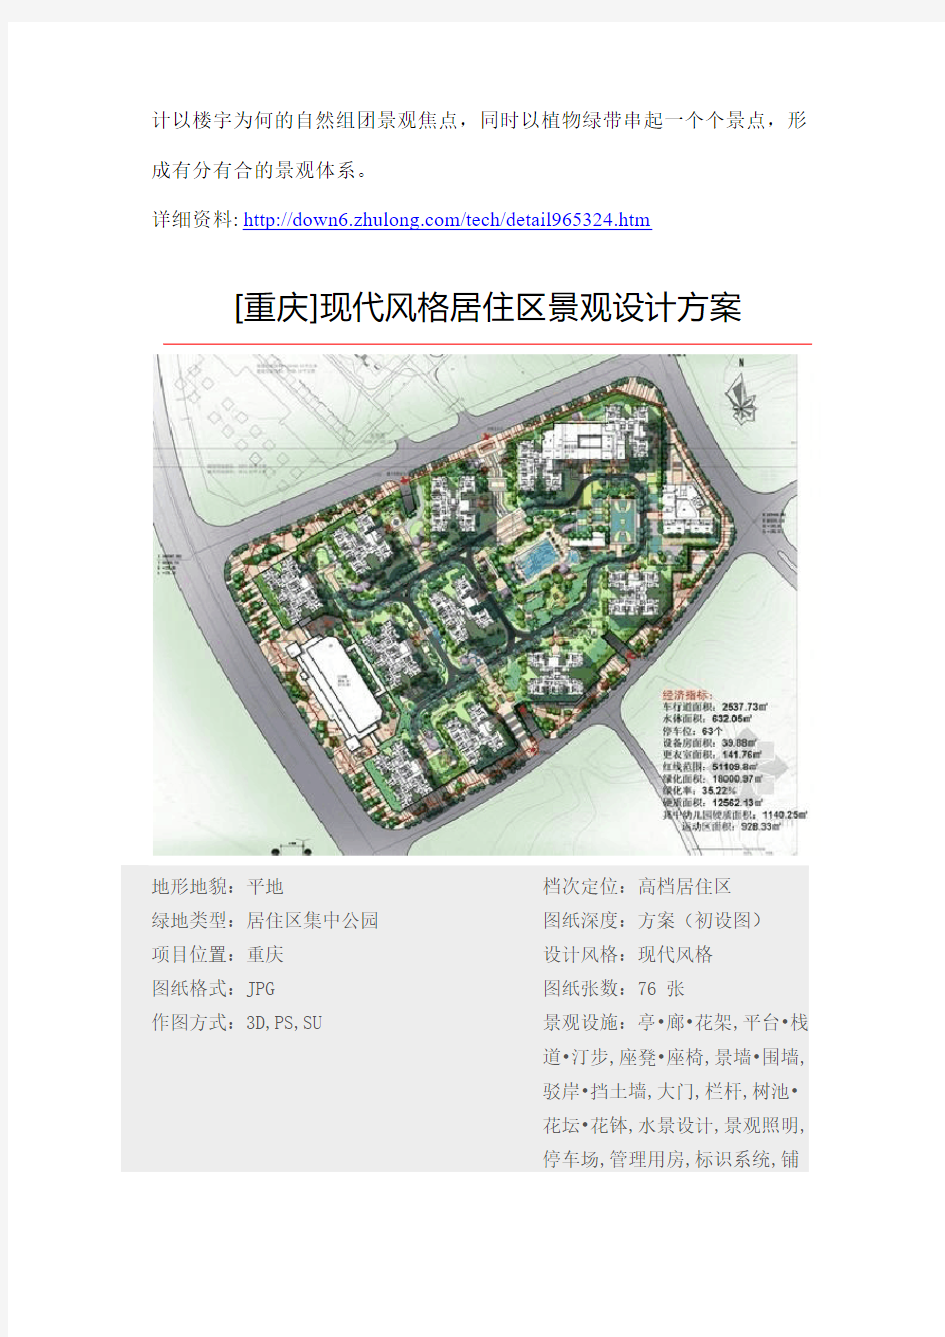 【精选】2013年住宅小区景观方案文本汇总